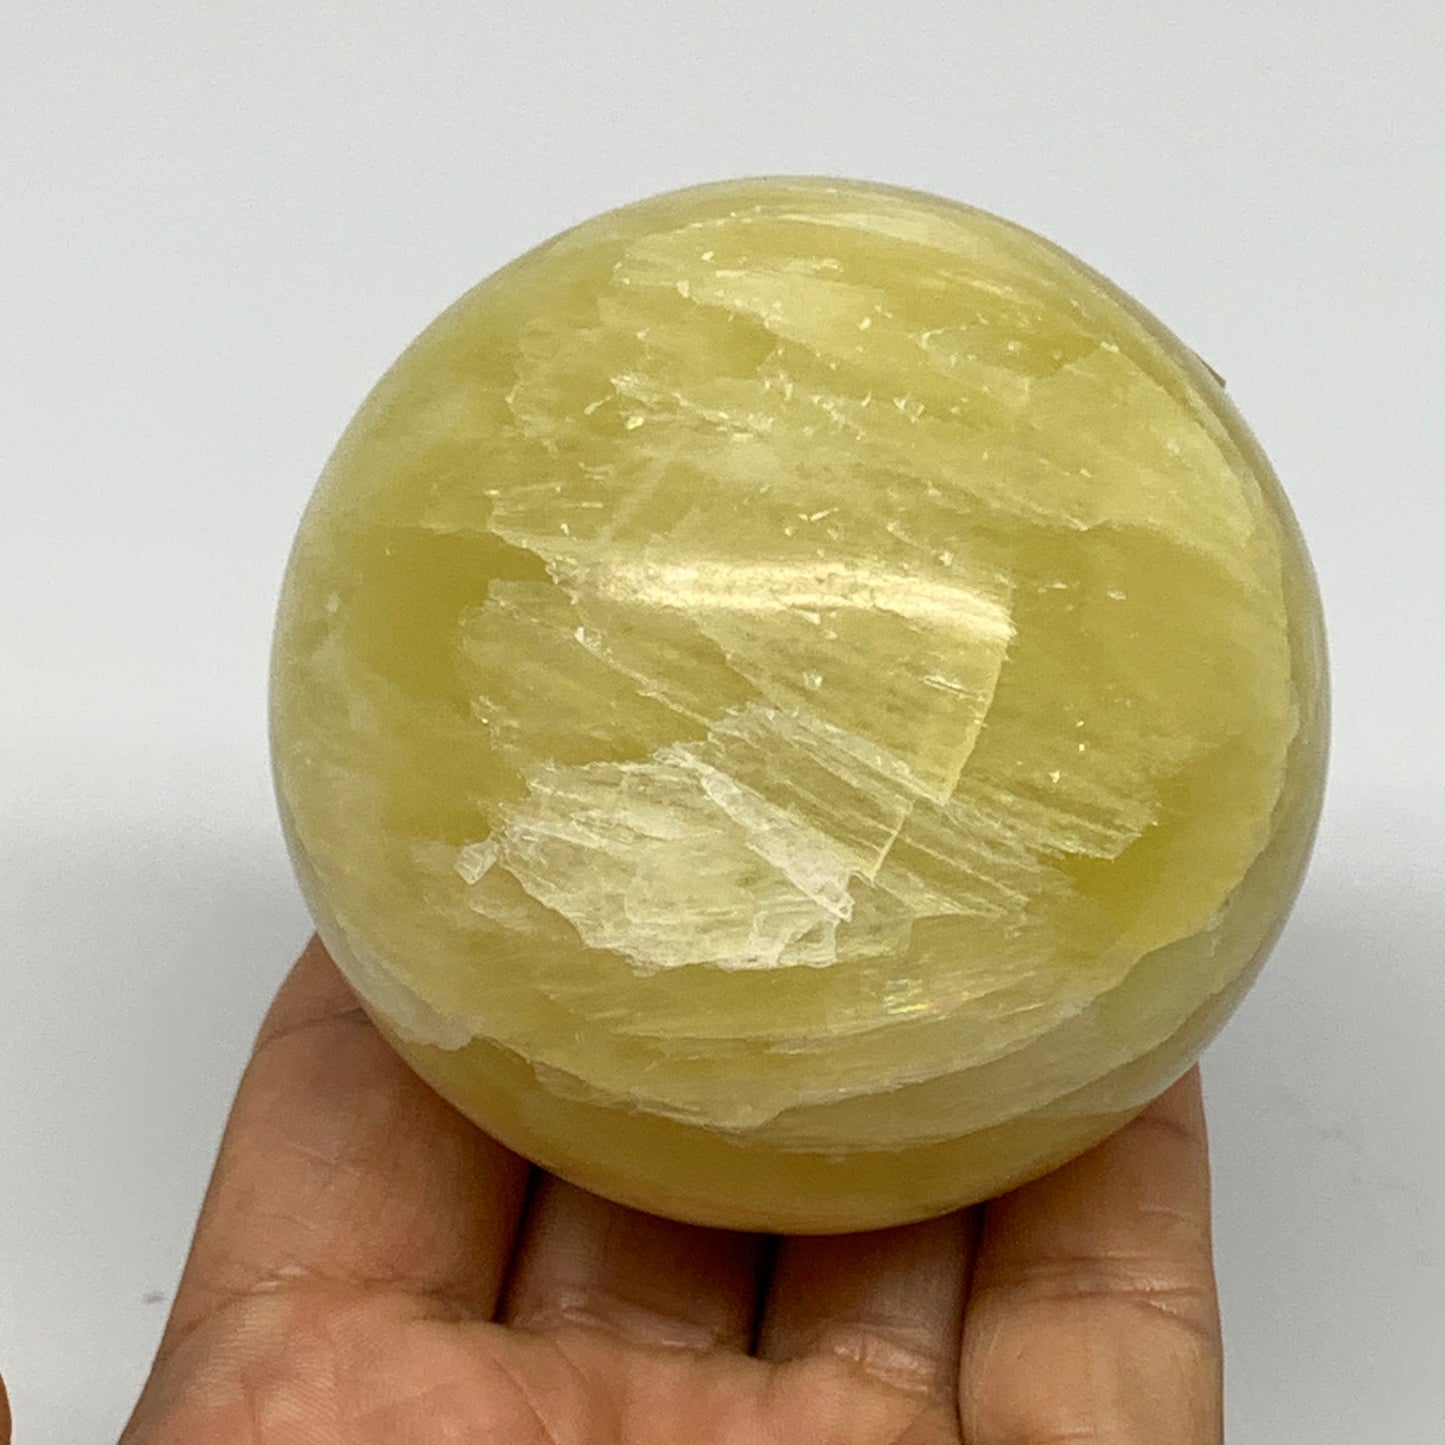 1.11 lbs,2.7"(69mm) Lemon Calcite Sphere Gemstone,Healing Crystal,B26047